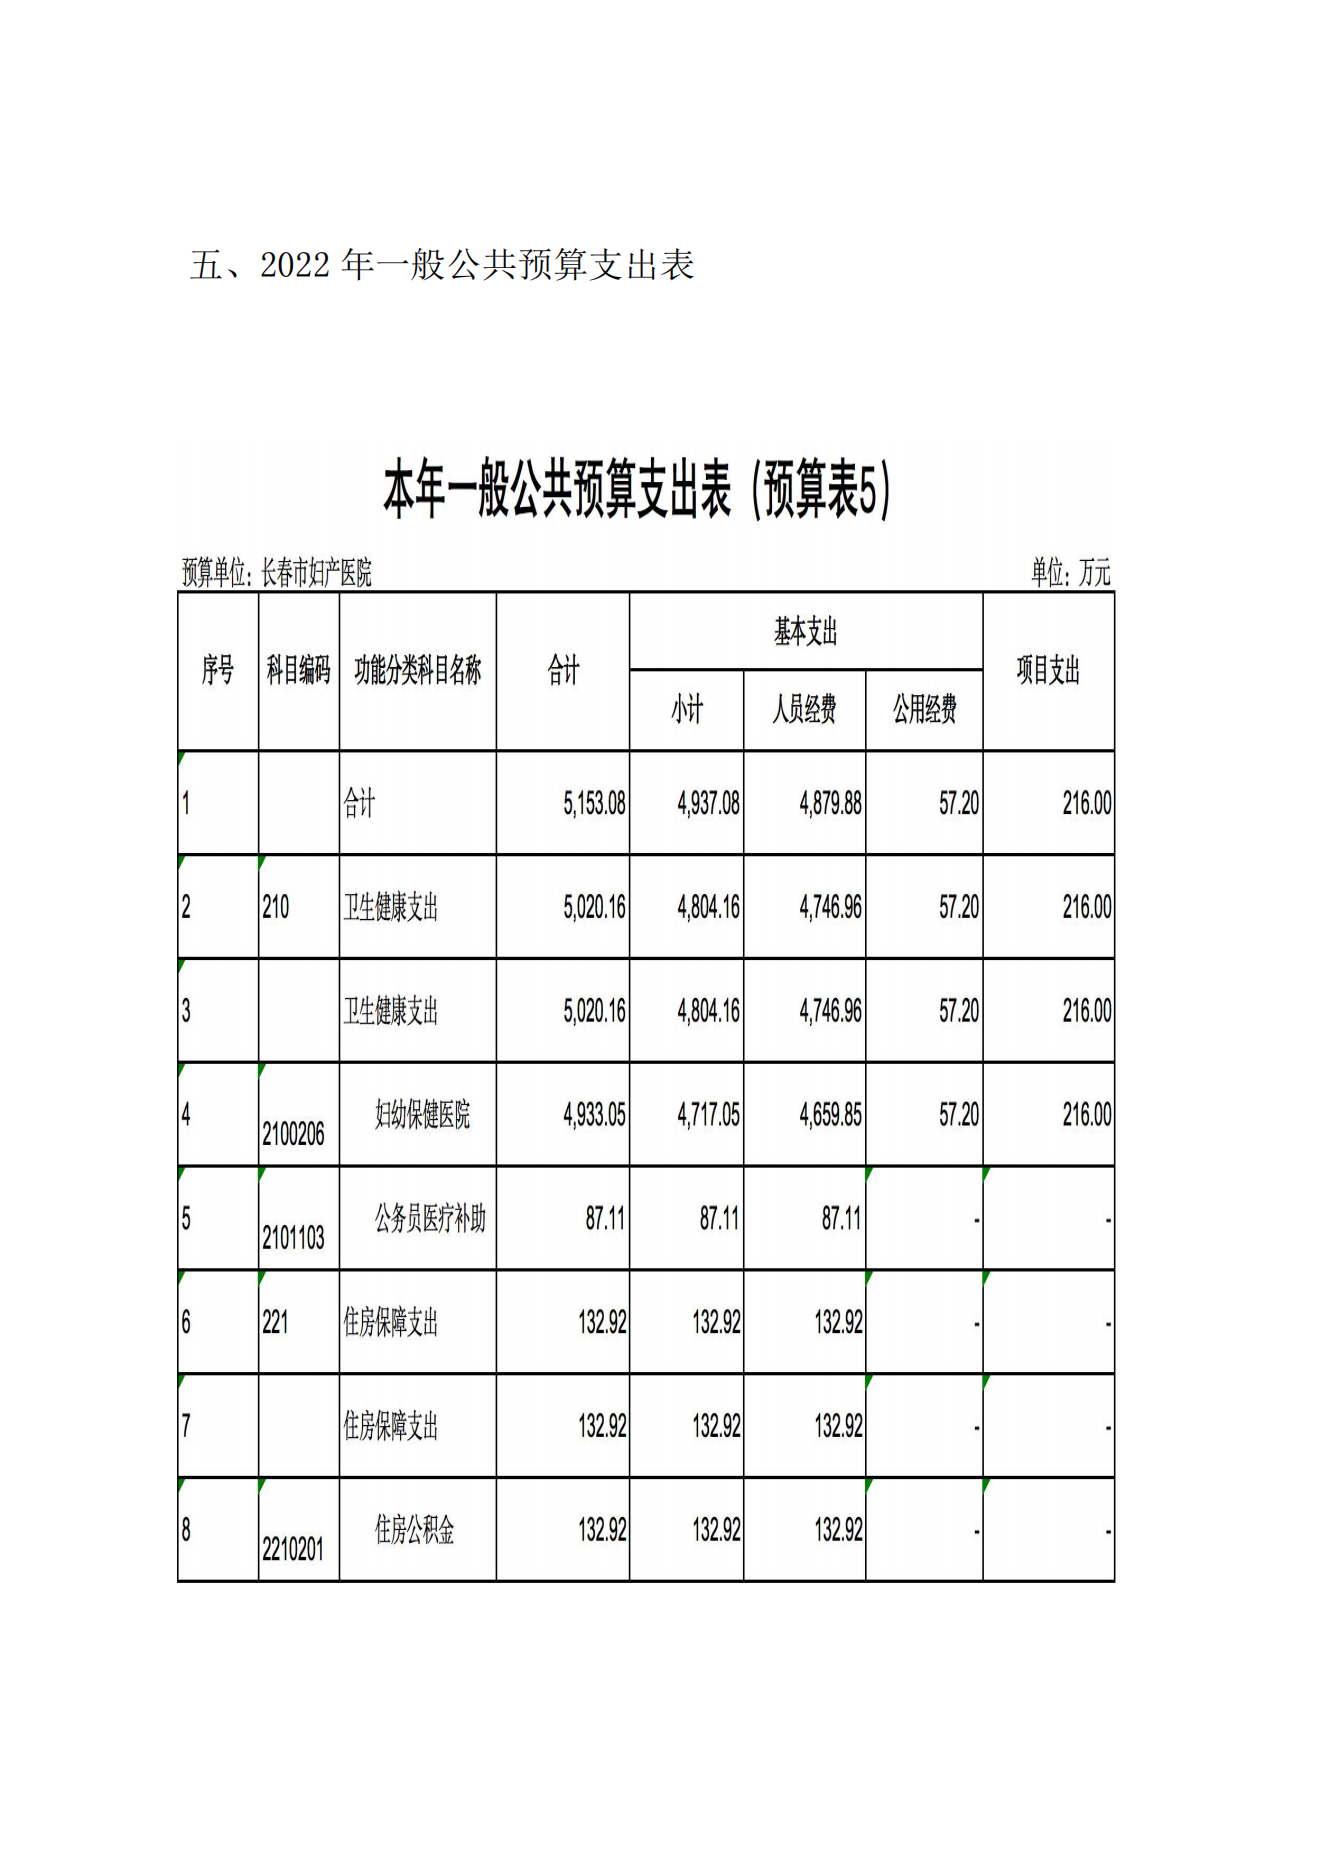 新长春市妇产医院2022年预算公开说明9.20_09.png